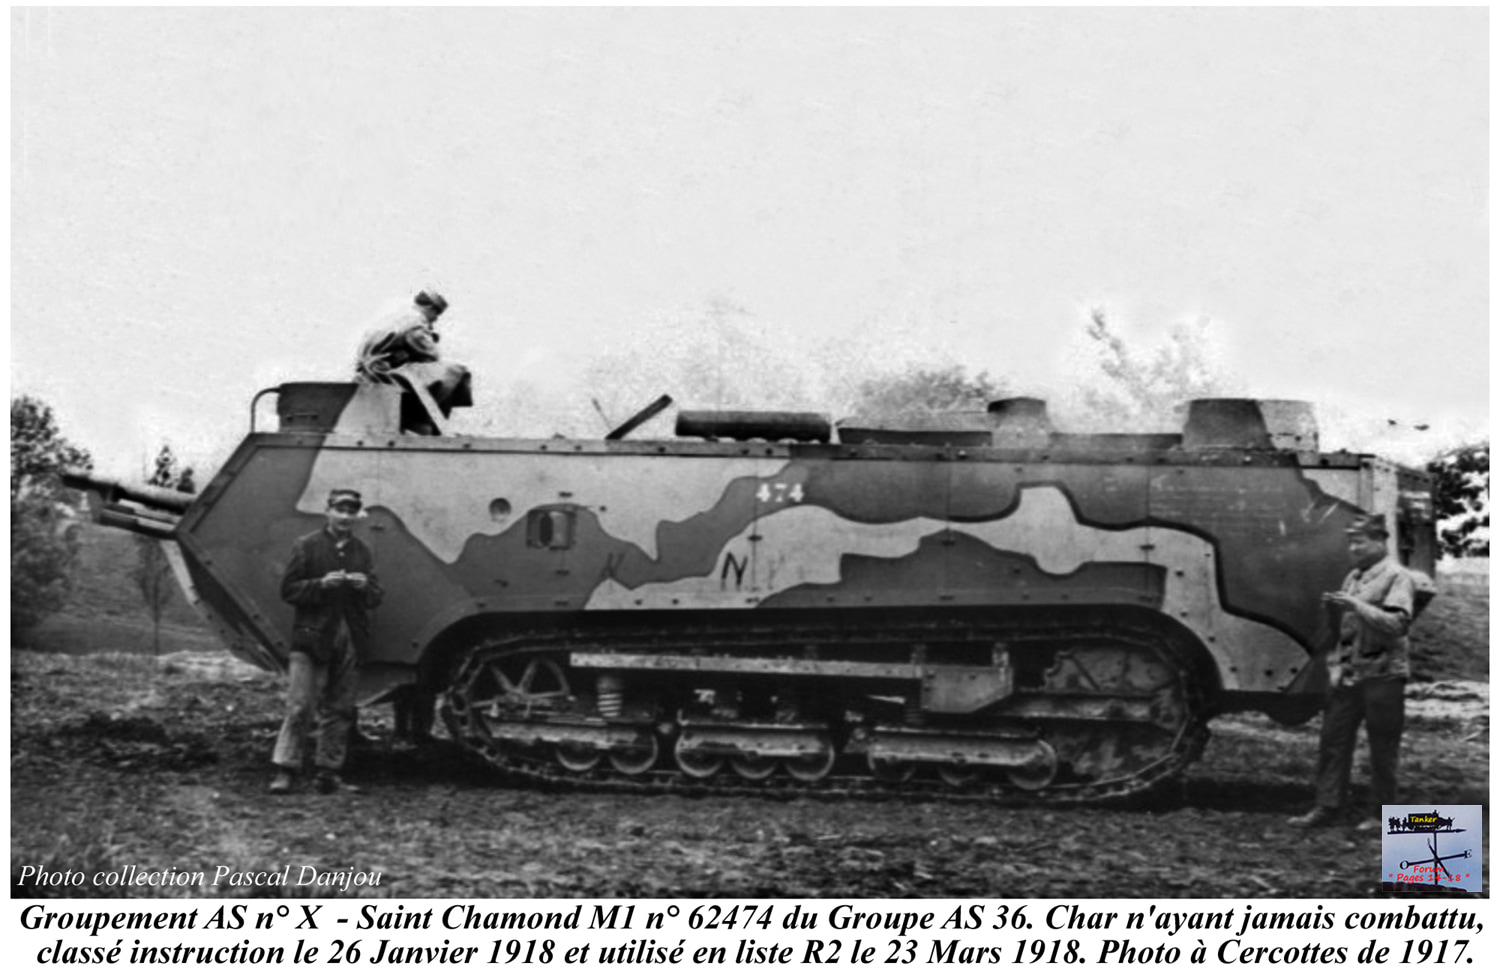 Grpt X - AS 36 - St Chamond M1 AsTx n° 62474 (01)-min.jpg